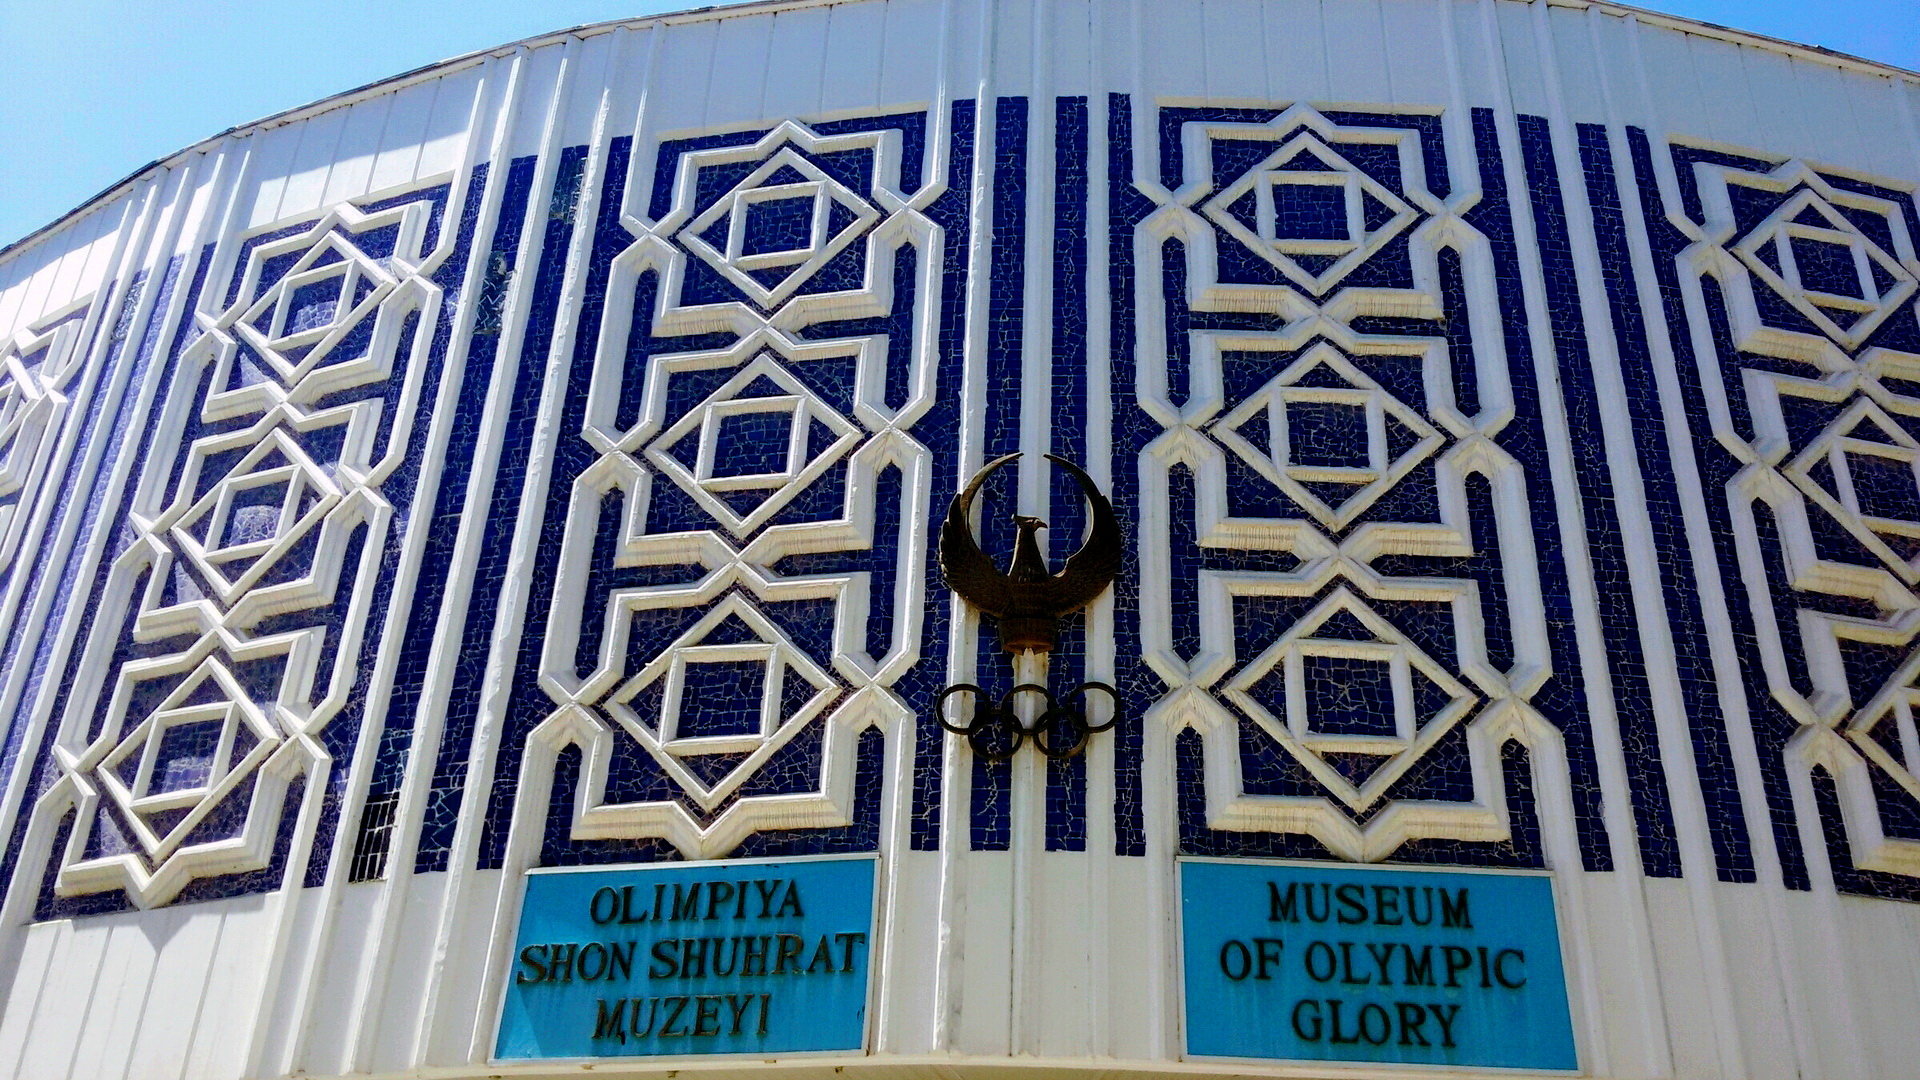 ウズベキスタン・オリンピック栄光博物館